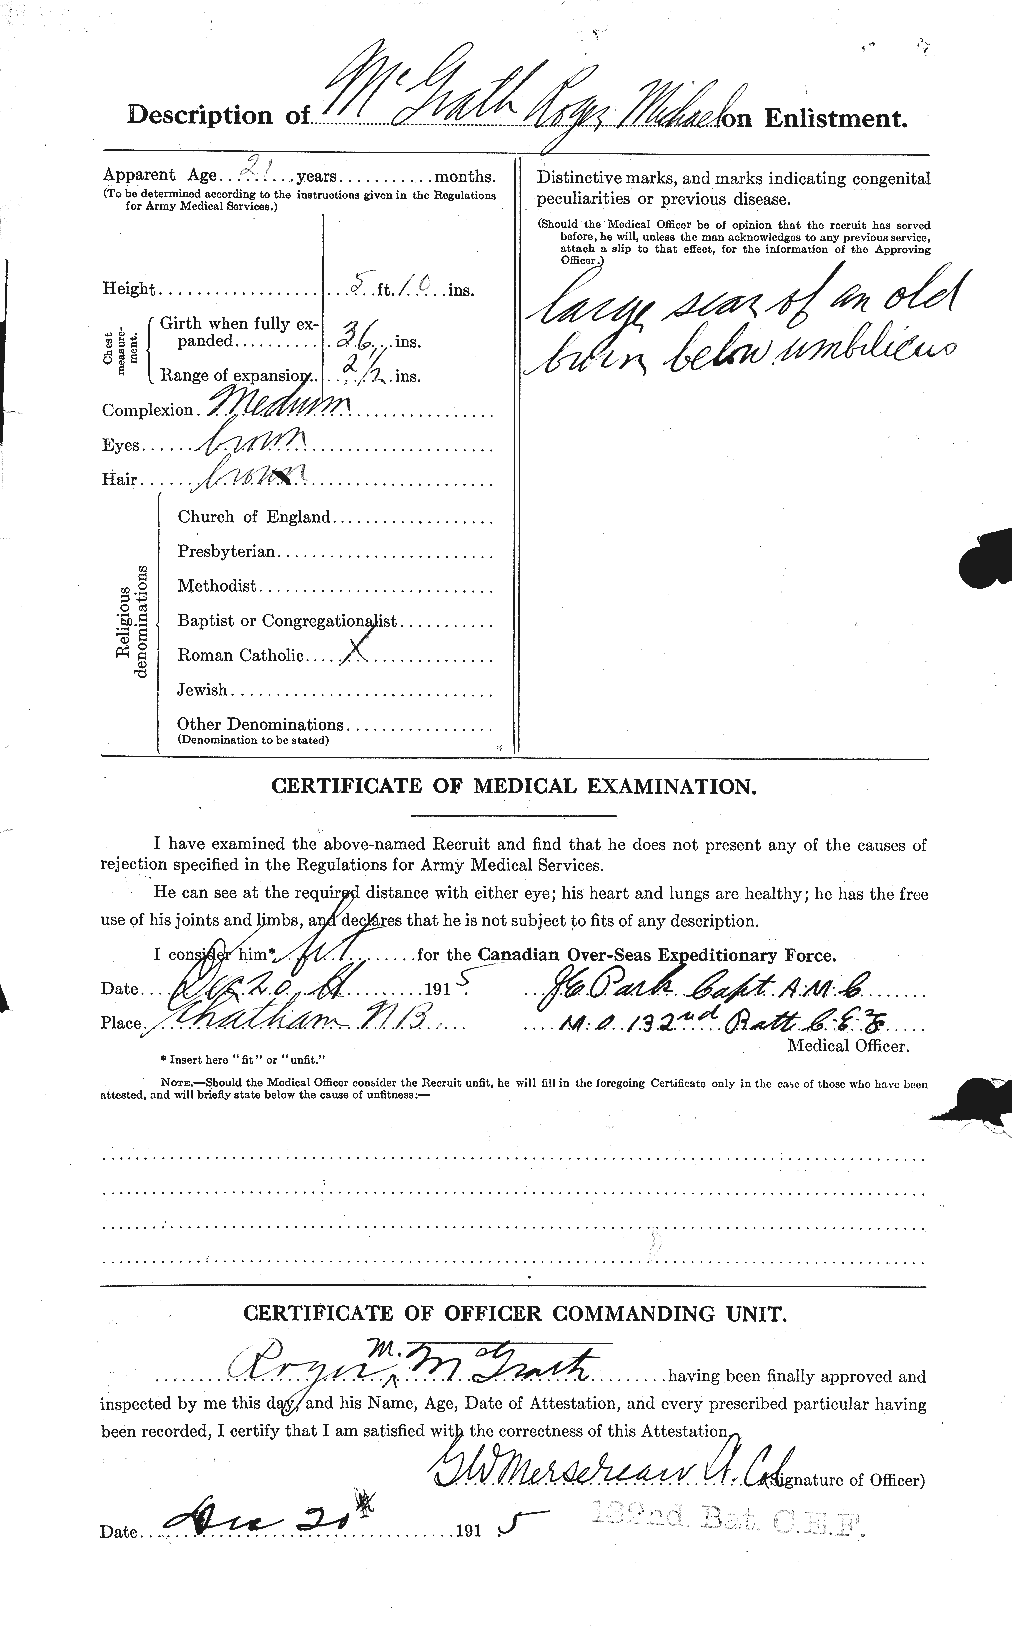 Dossiers du Personnel de la Première Guerre mondiale - CEC 523673b